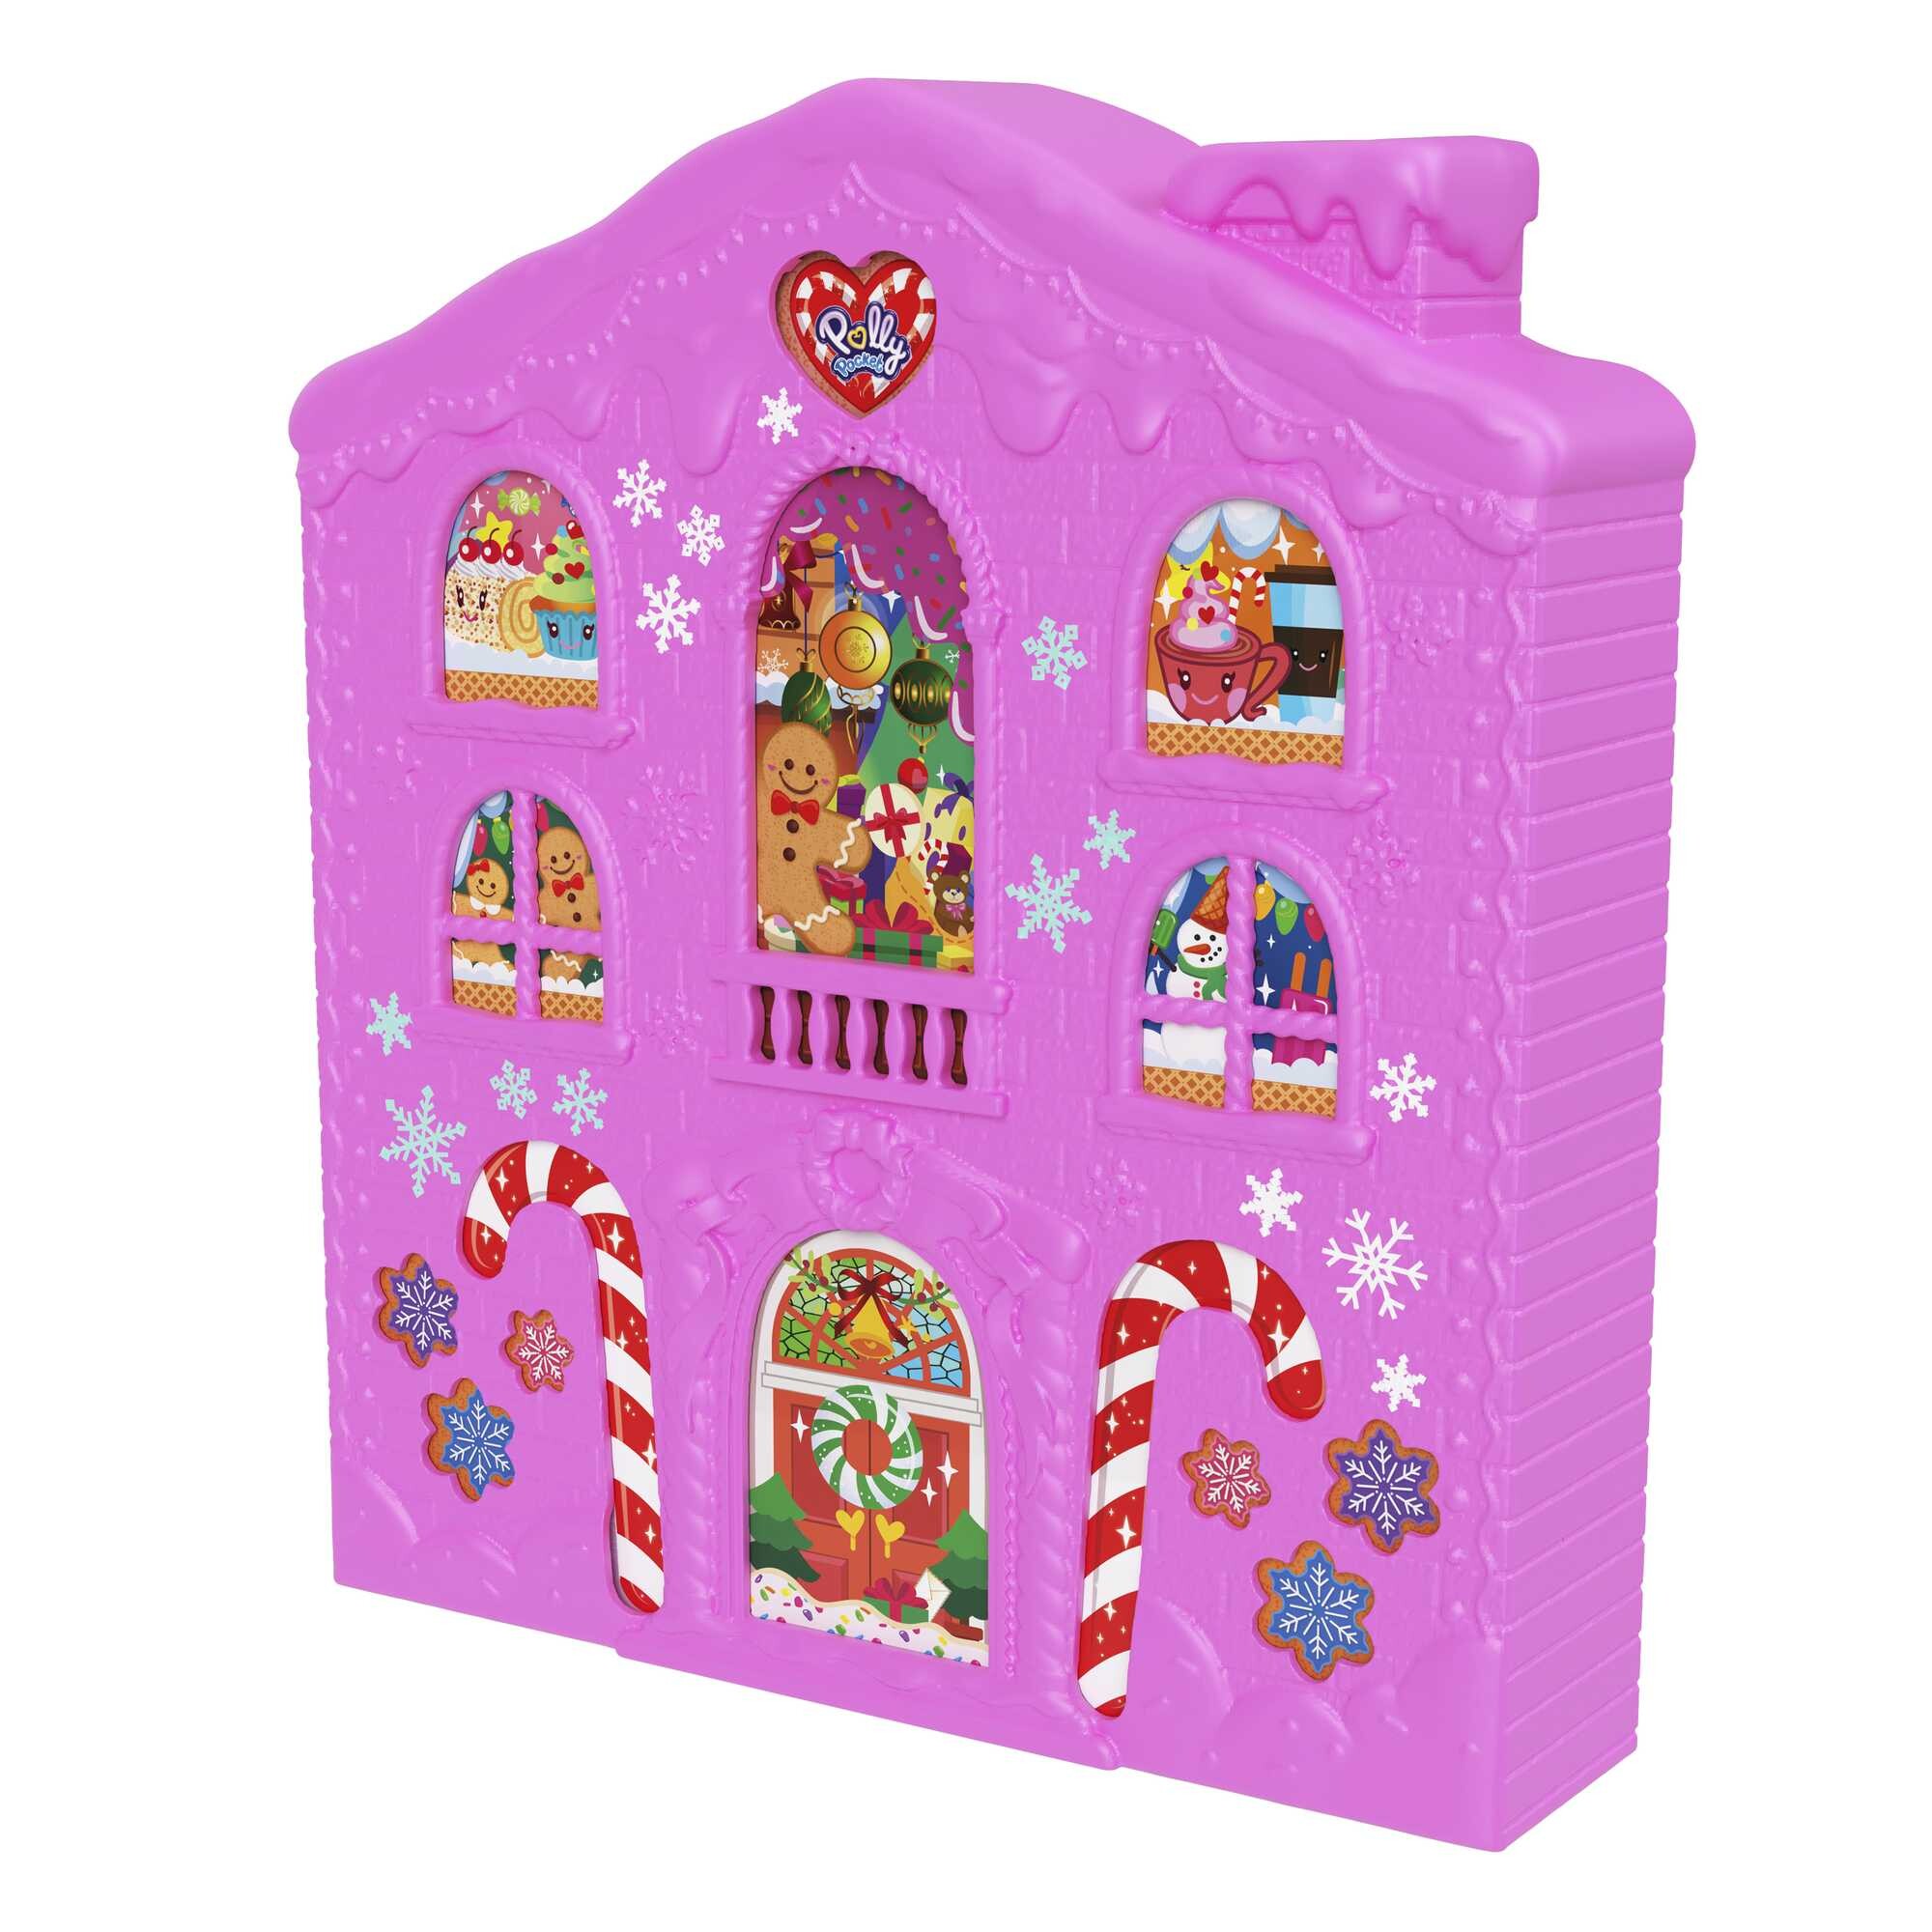 Polly pocket™ calendario dell'avvento delle bambole, playset casa di pan di zenzero con 25 regali a sorpresa - Polly Pocket